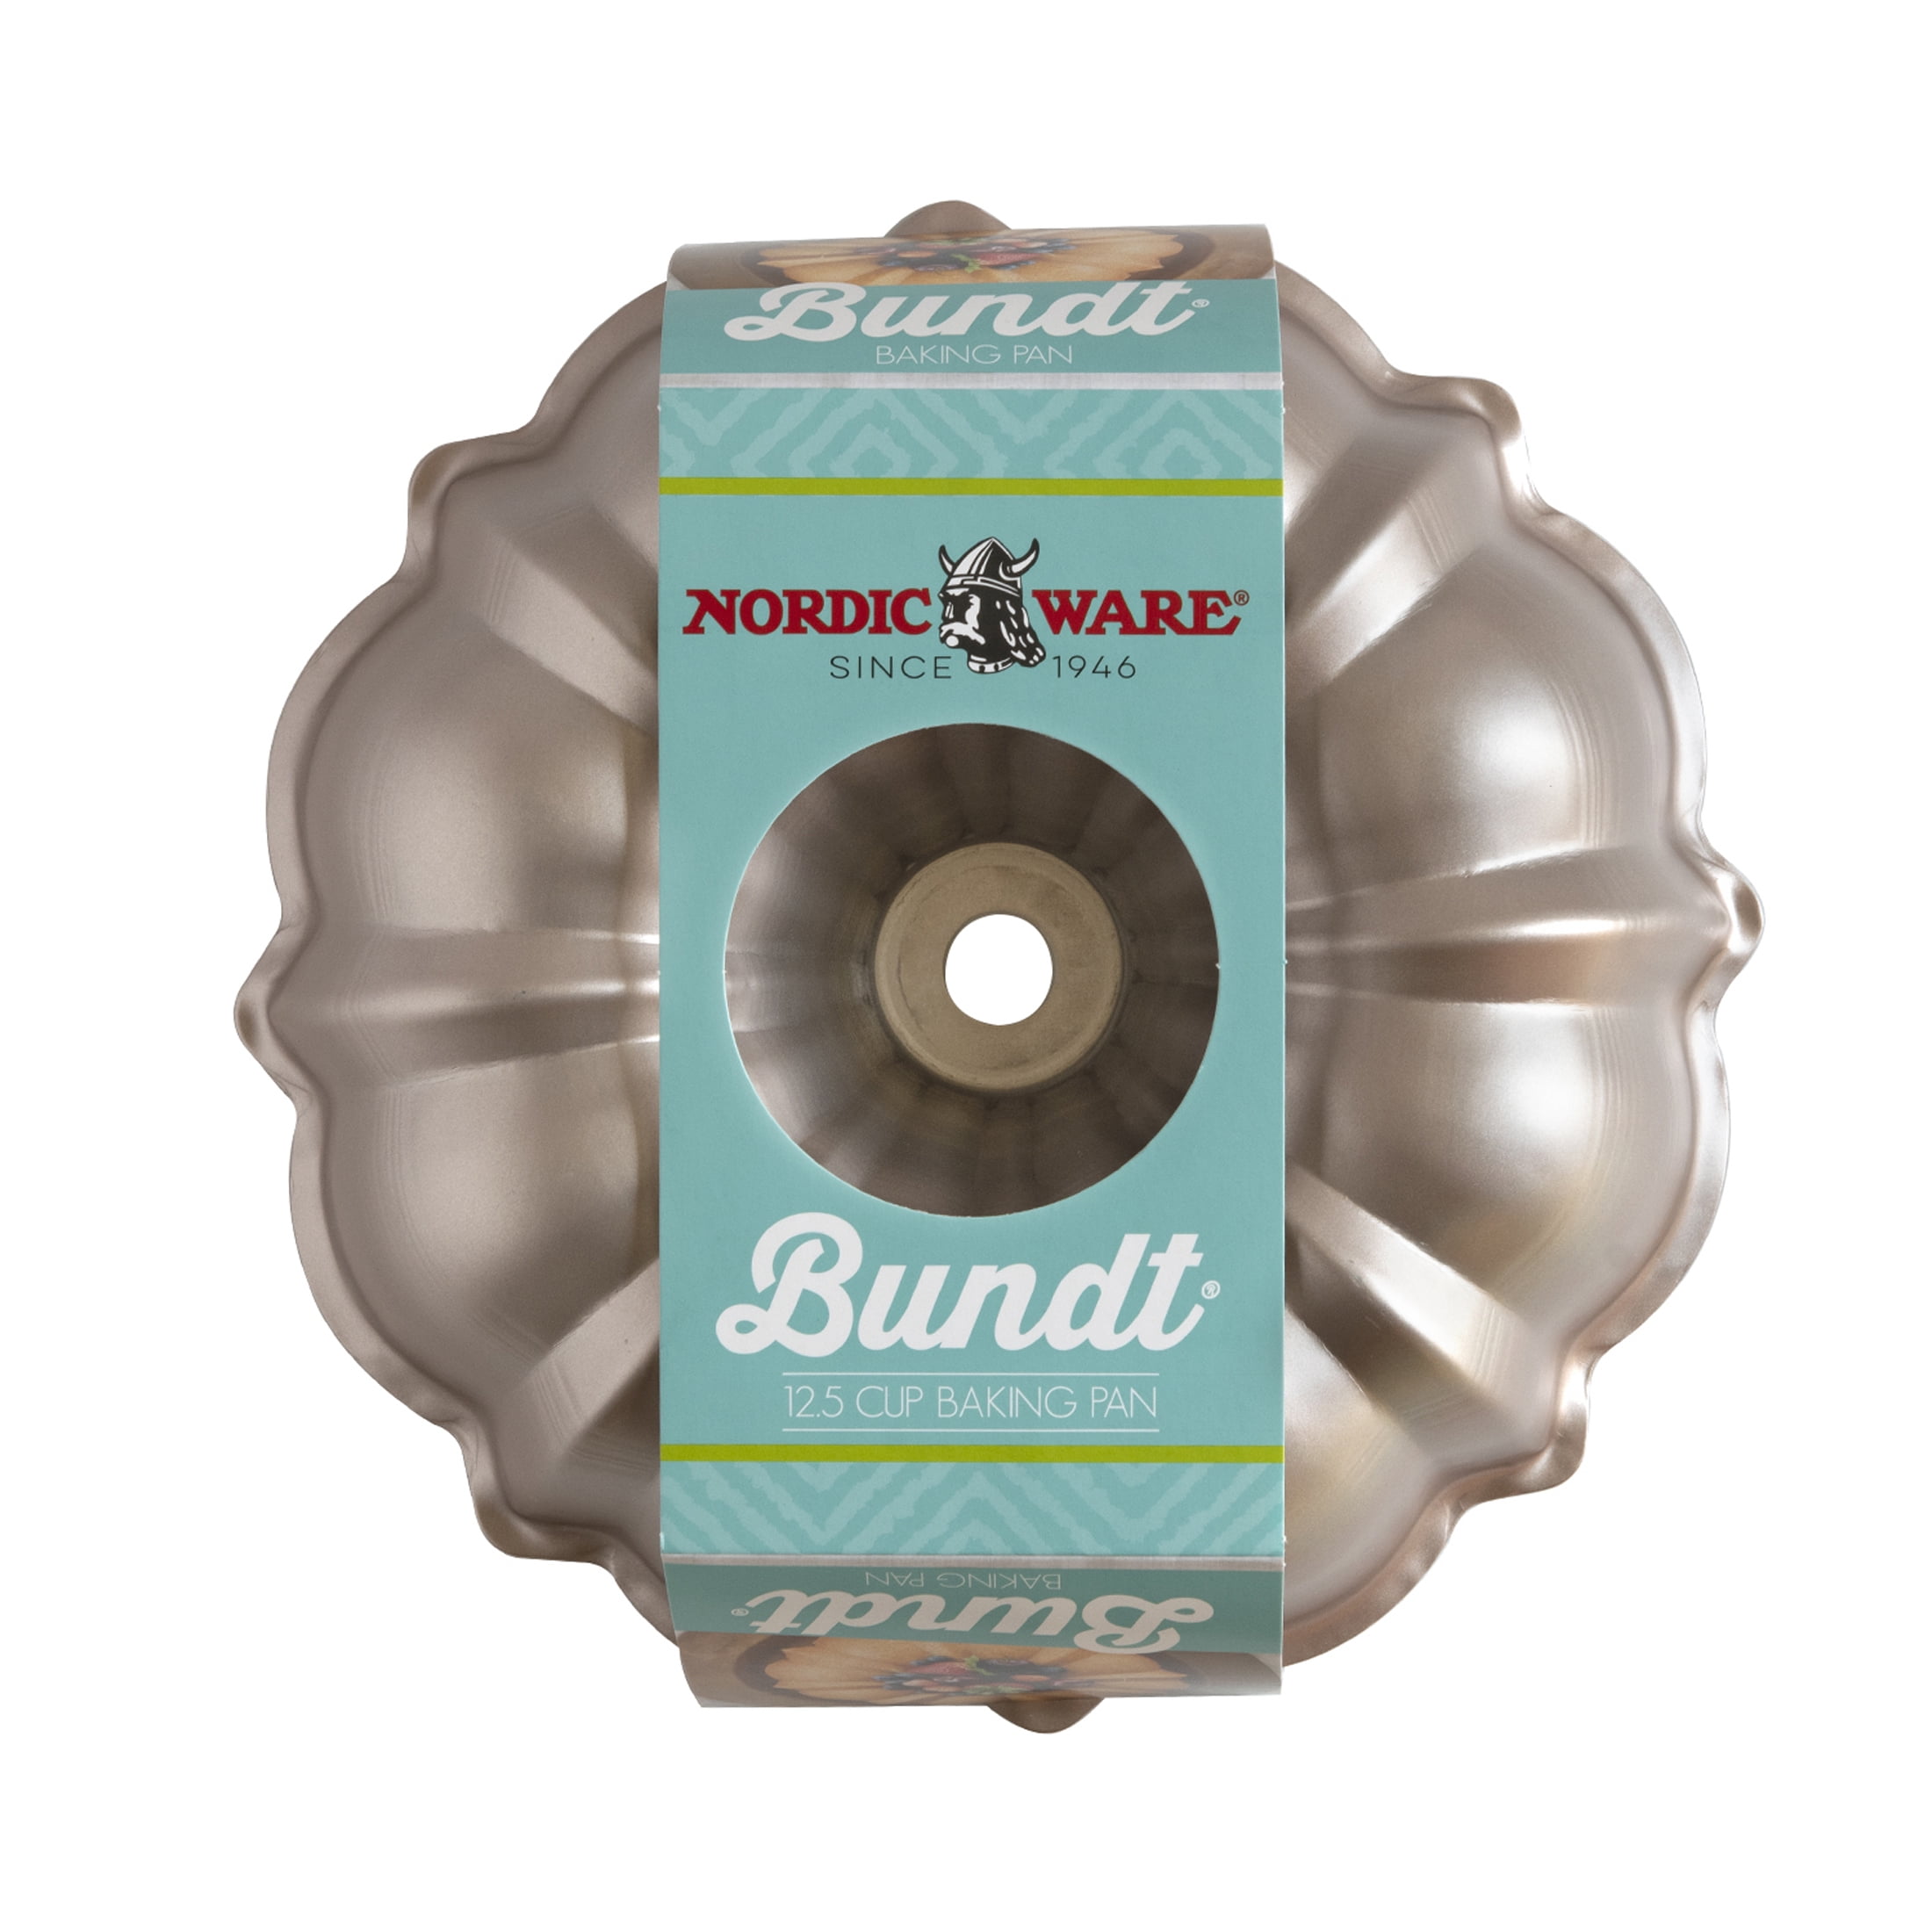 12 Cup Formed Bundt® Pan - Nordic Ware